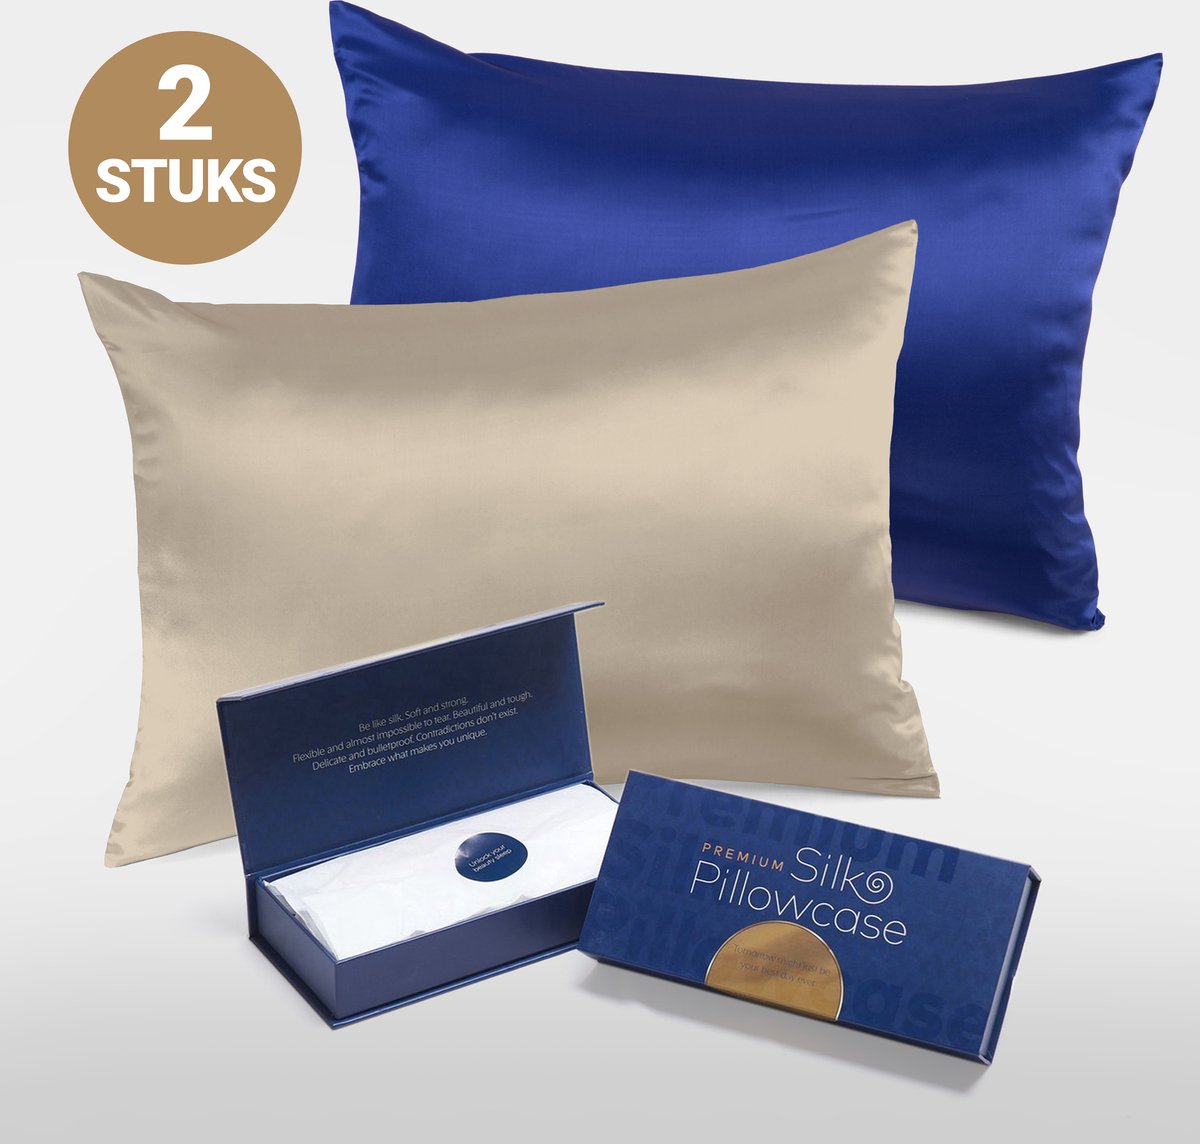 Slowwave Premium Silk Pillowcase - Extra voordelig colorpack: Champagne en Cloud Burst (blauw) - Ervaar het beste zijden kussensloop - 100% Mulberry zijde - 22 momme - Hoogste kwaliteit (grade 6A) - 60x70cm